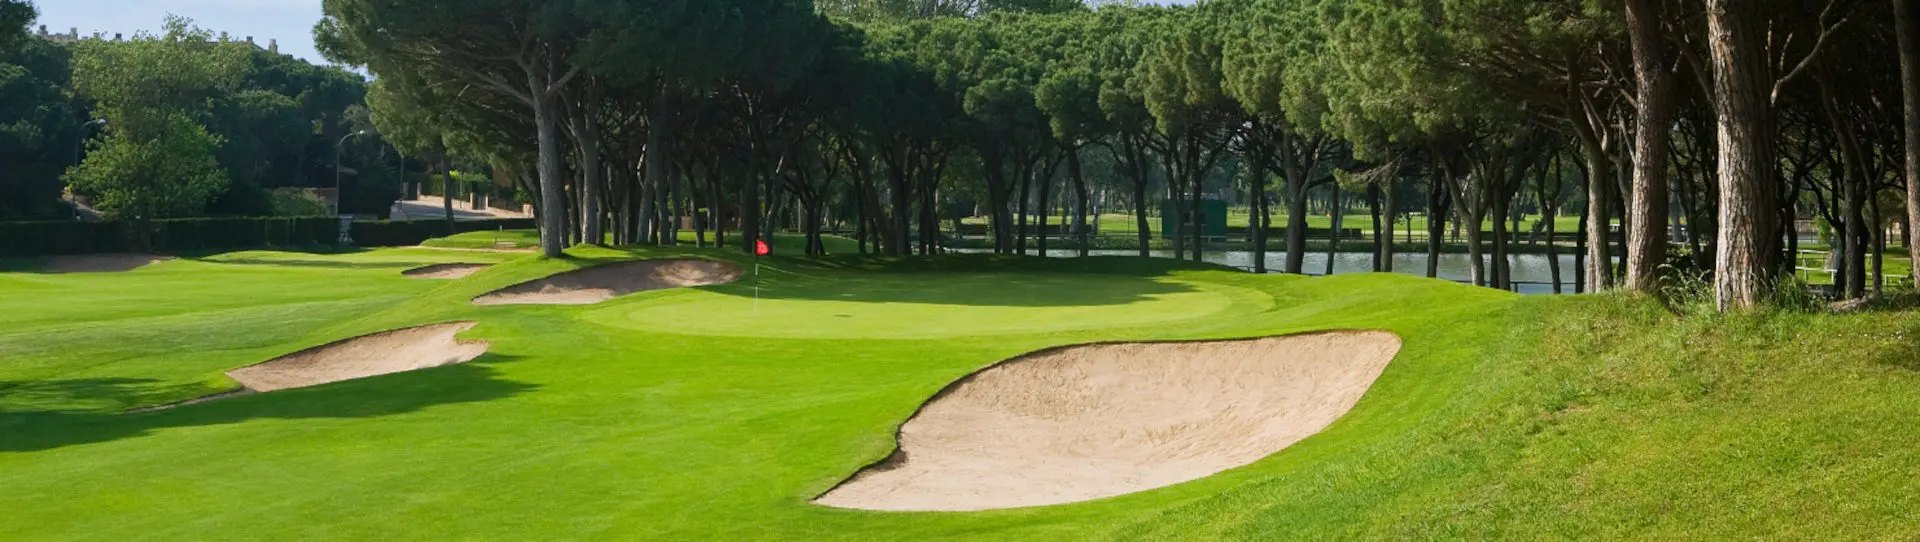 Spain golf courses - Golf de Pals - Photo 1